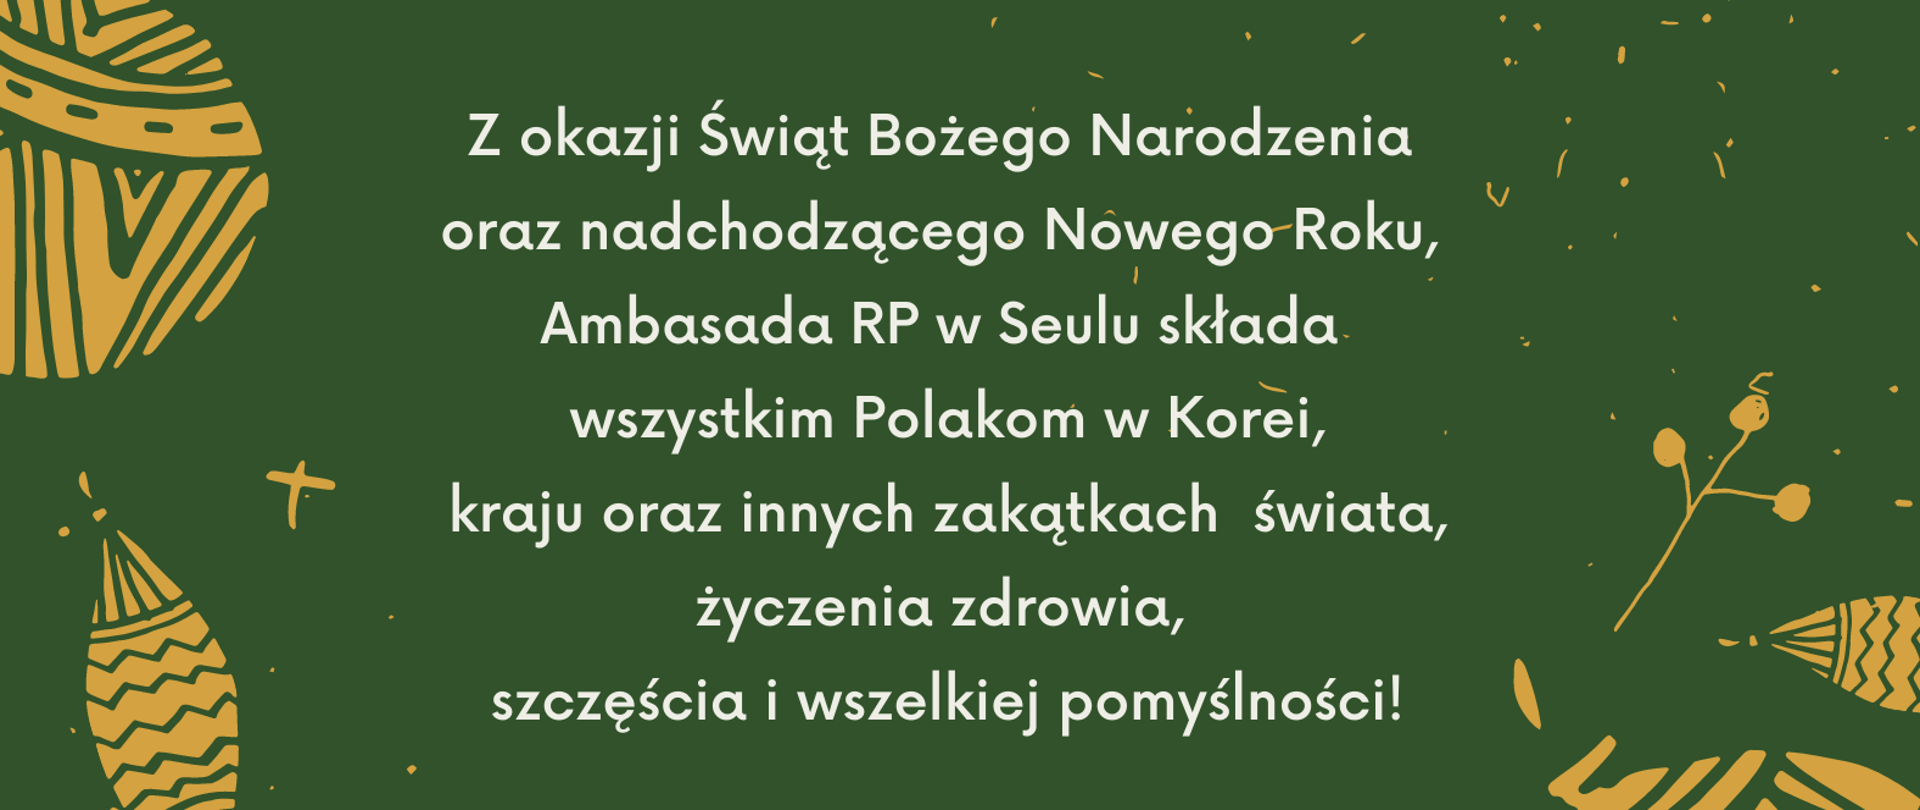 Życzenia świąteczne w języku polskim